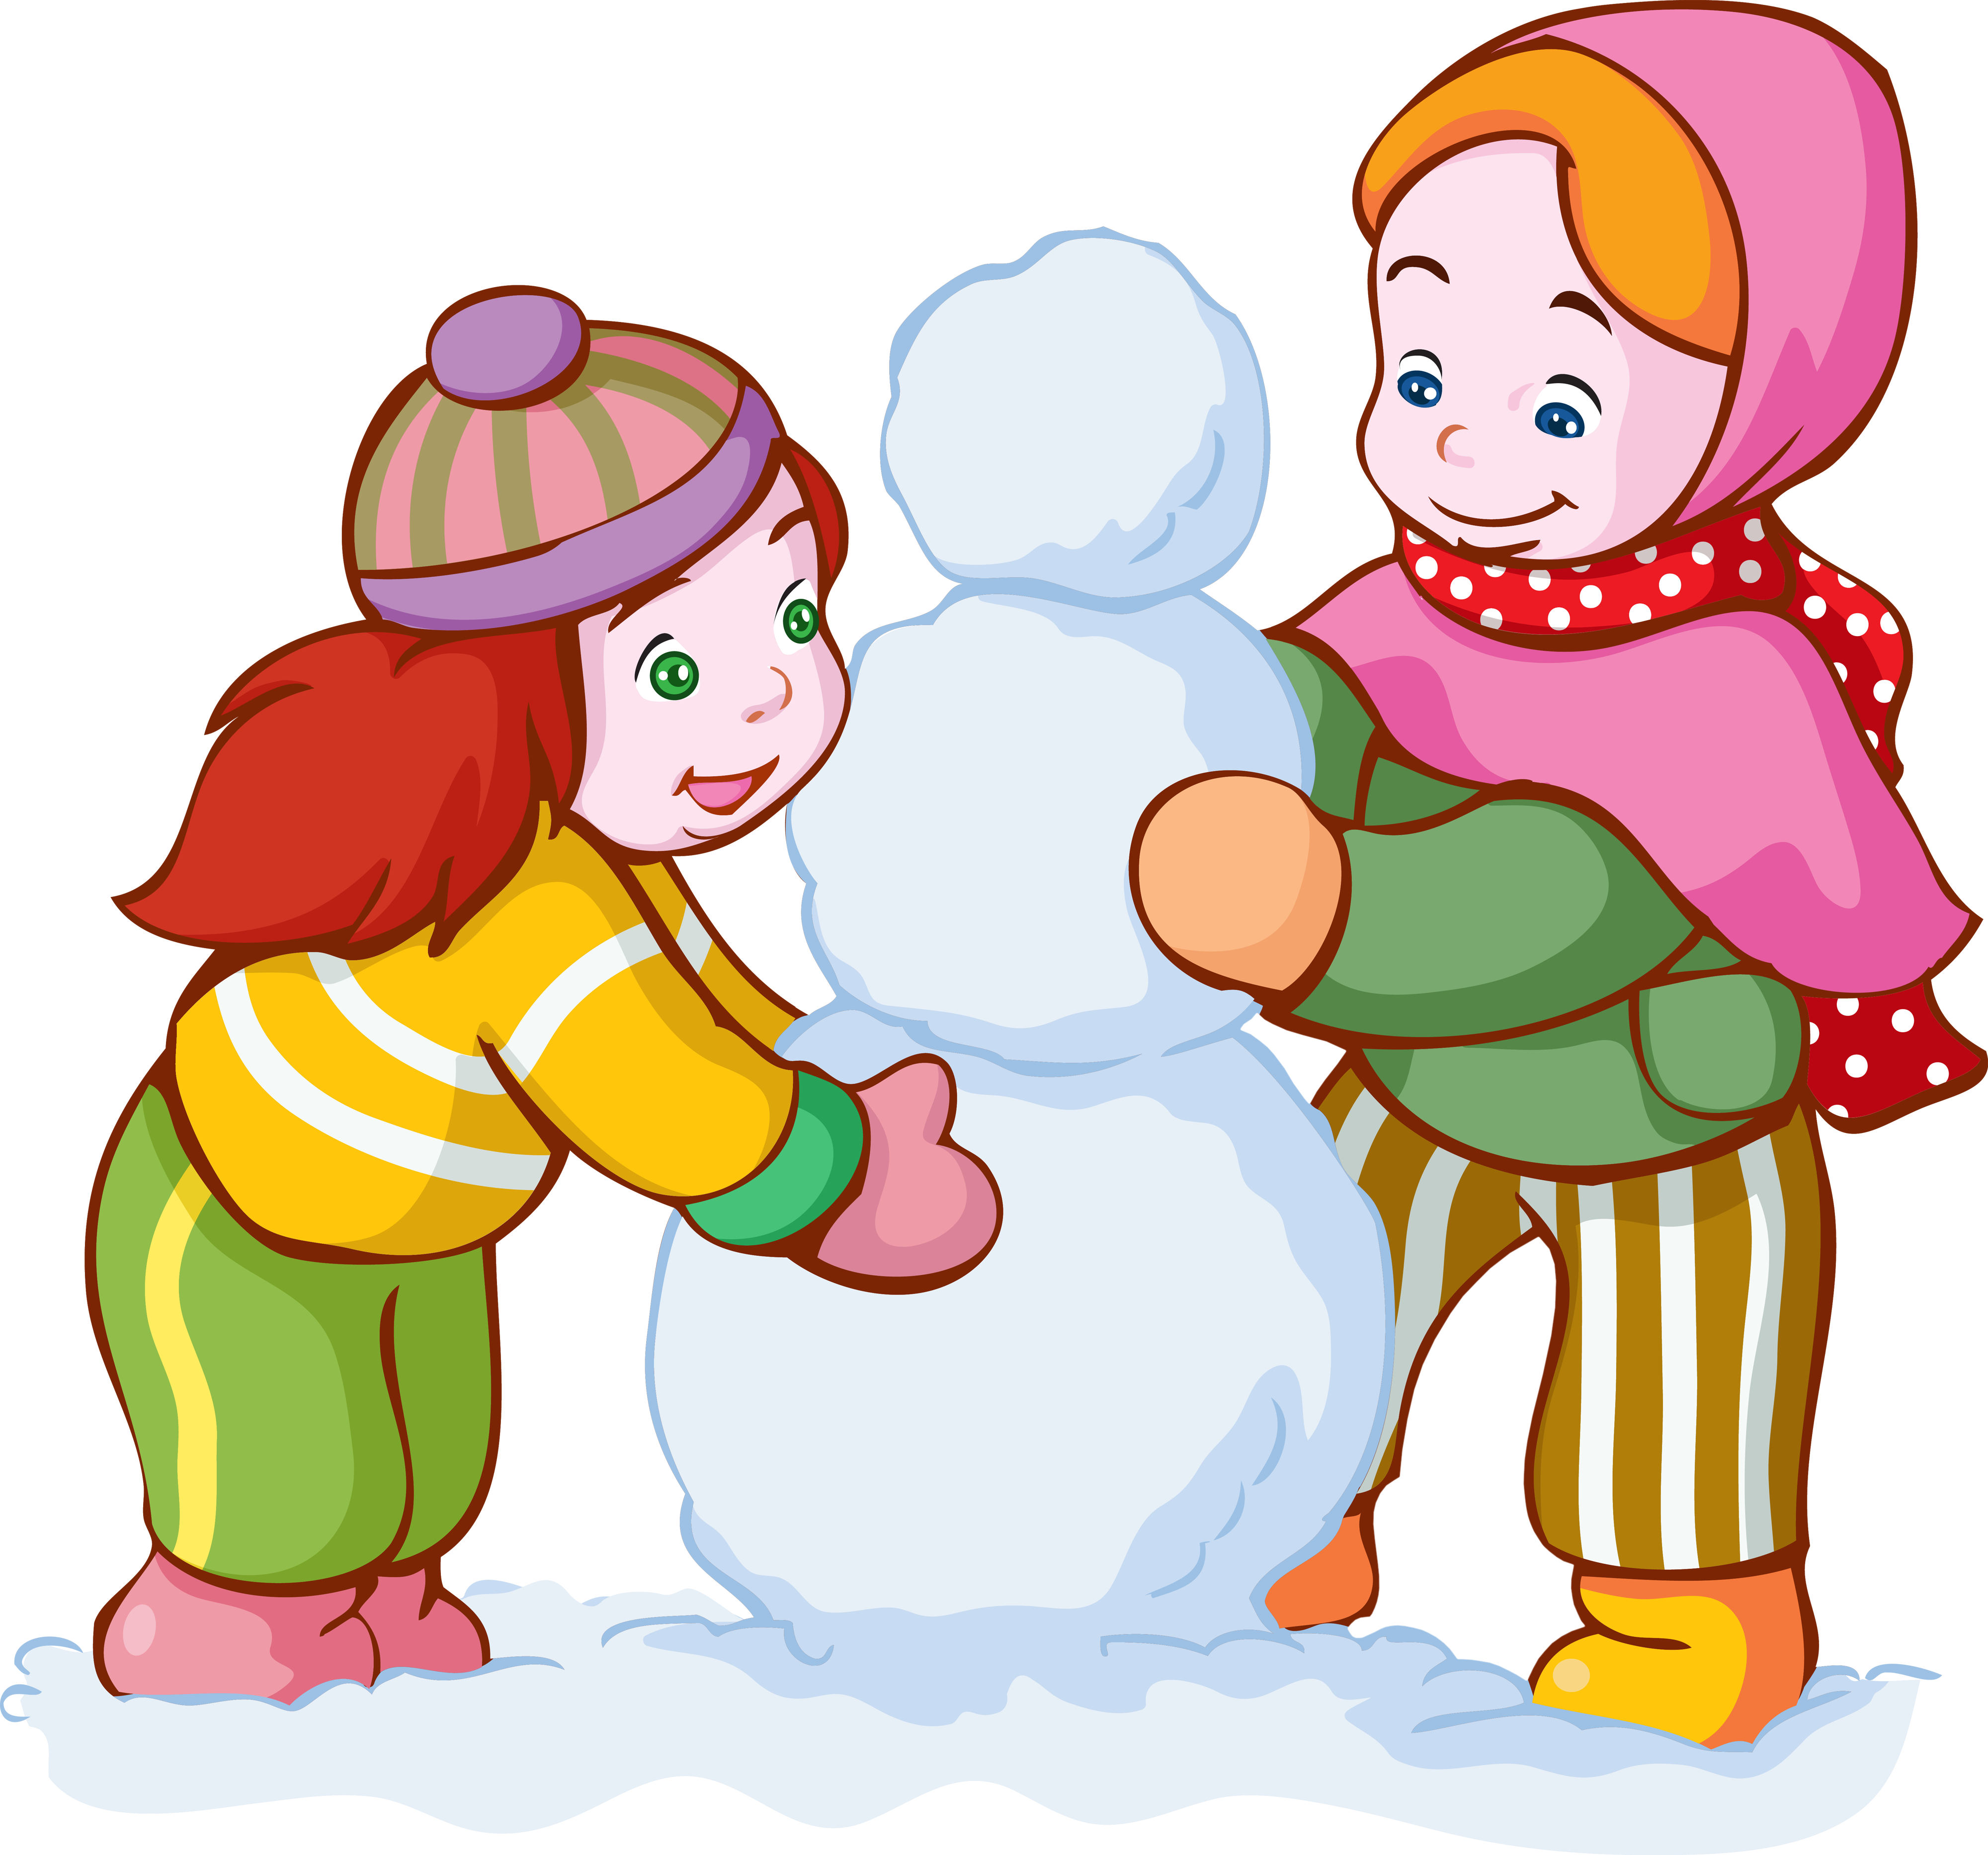 Играть в снежки снеговик. Девочка лепит снеговика. Дети лепят снеговика. Игра в снежки. Дети играют зимой.